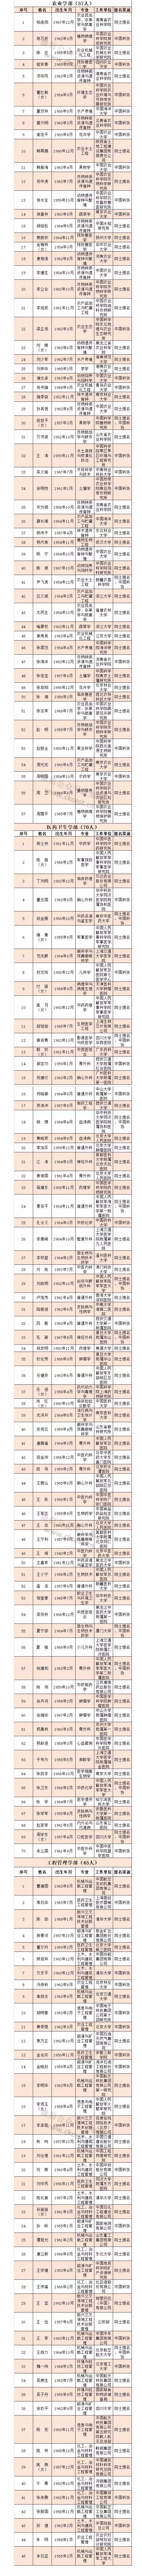 中国工程院2019年院士增选有效候选人名单发布